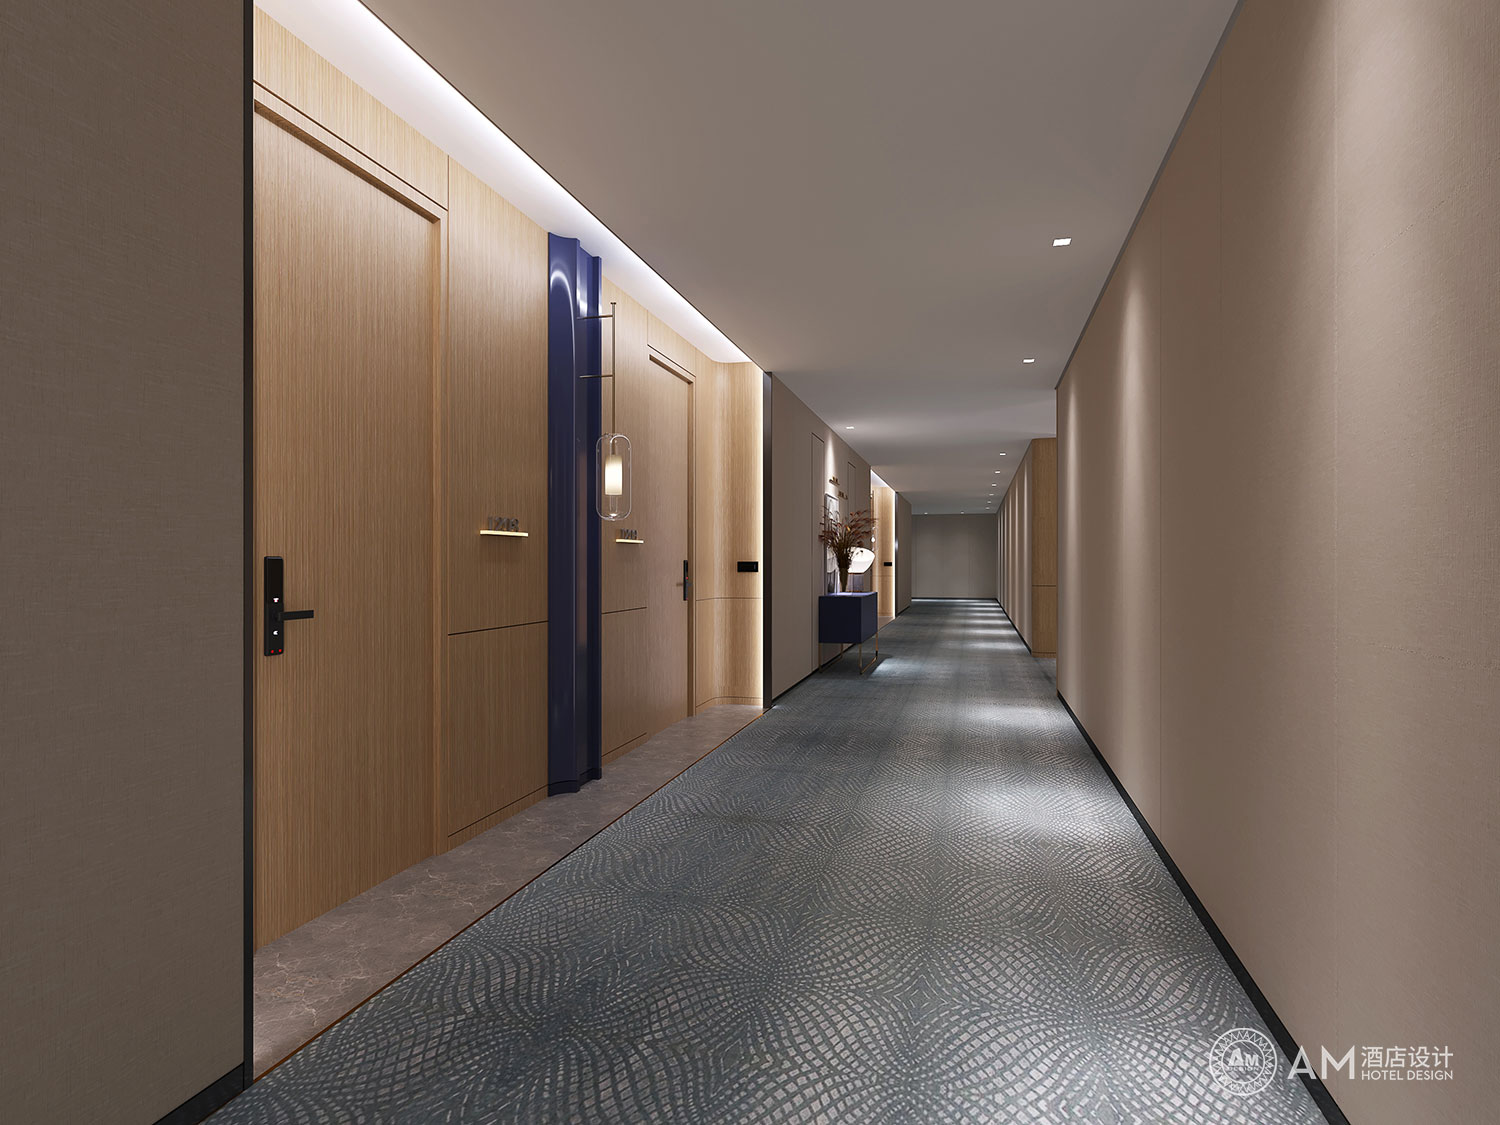 AM DESIGN | Yueli hotel design corridor design